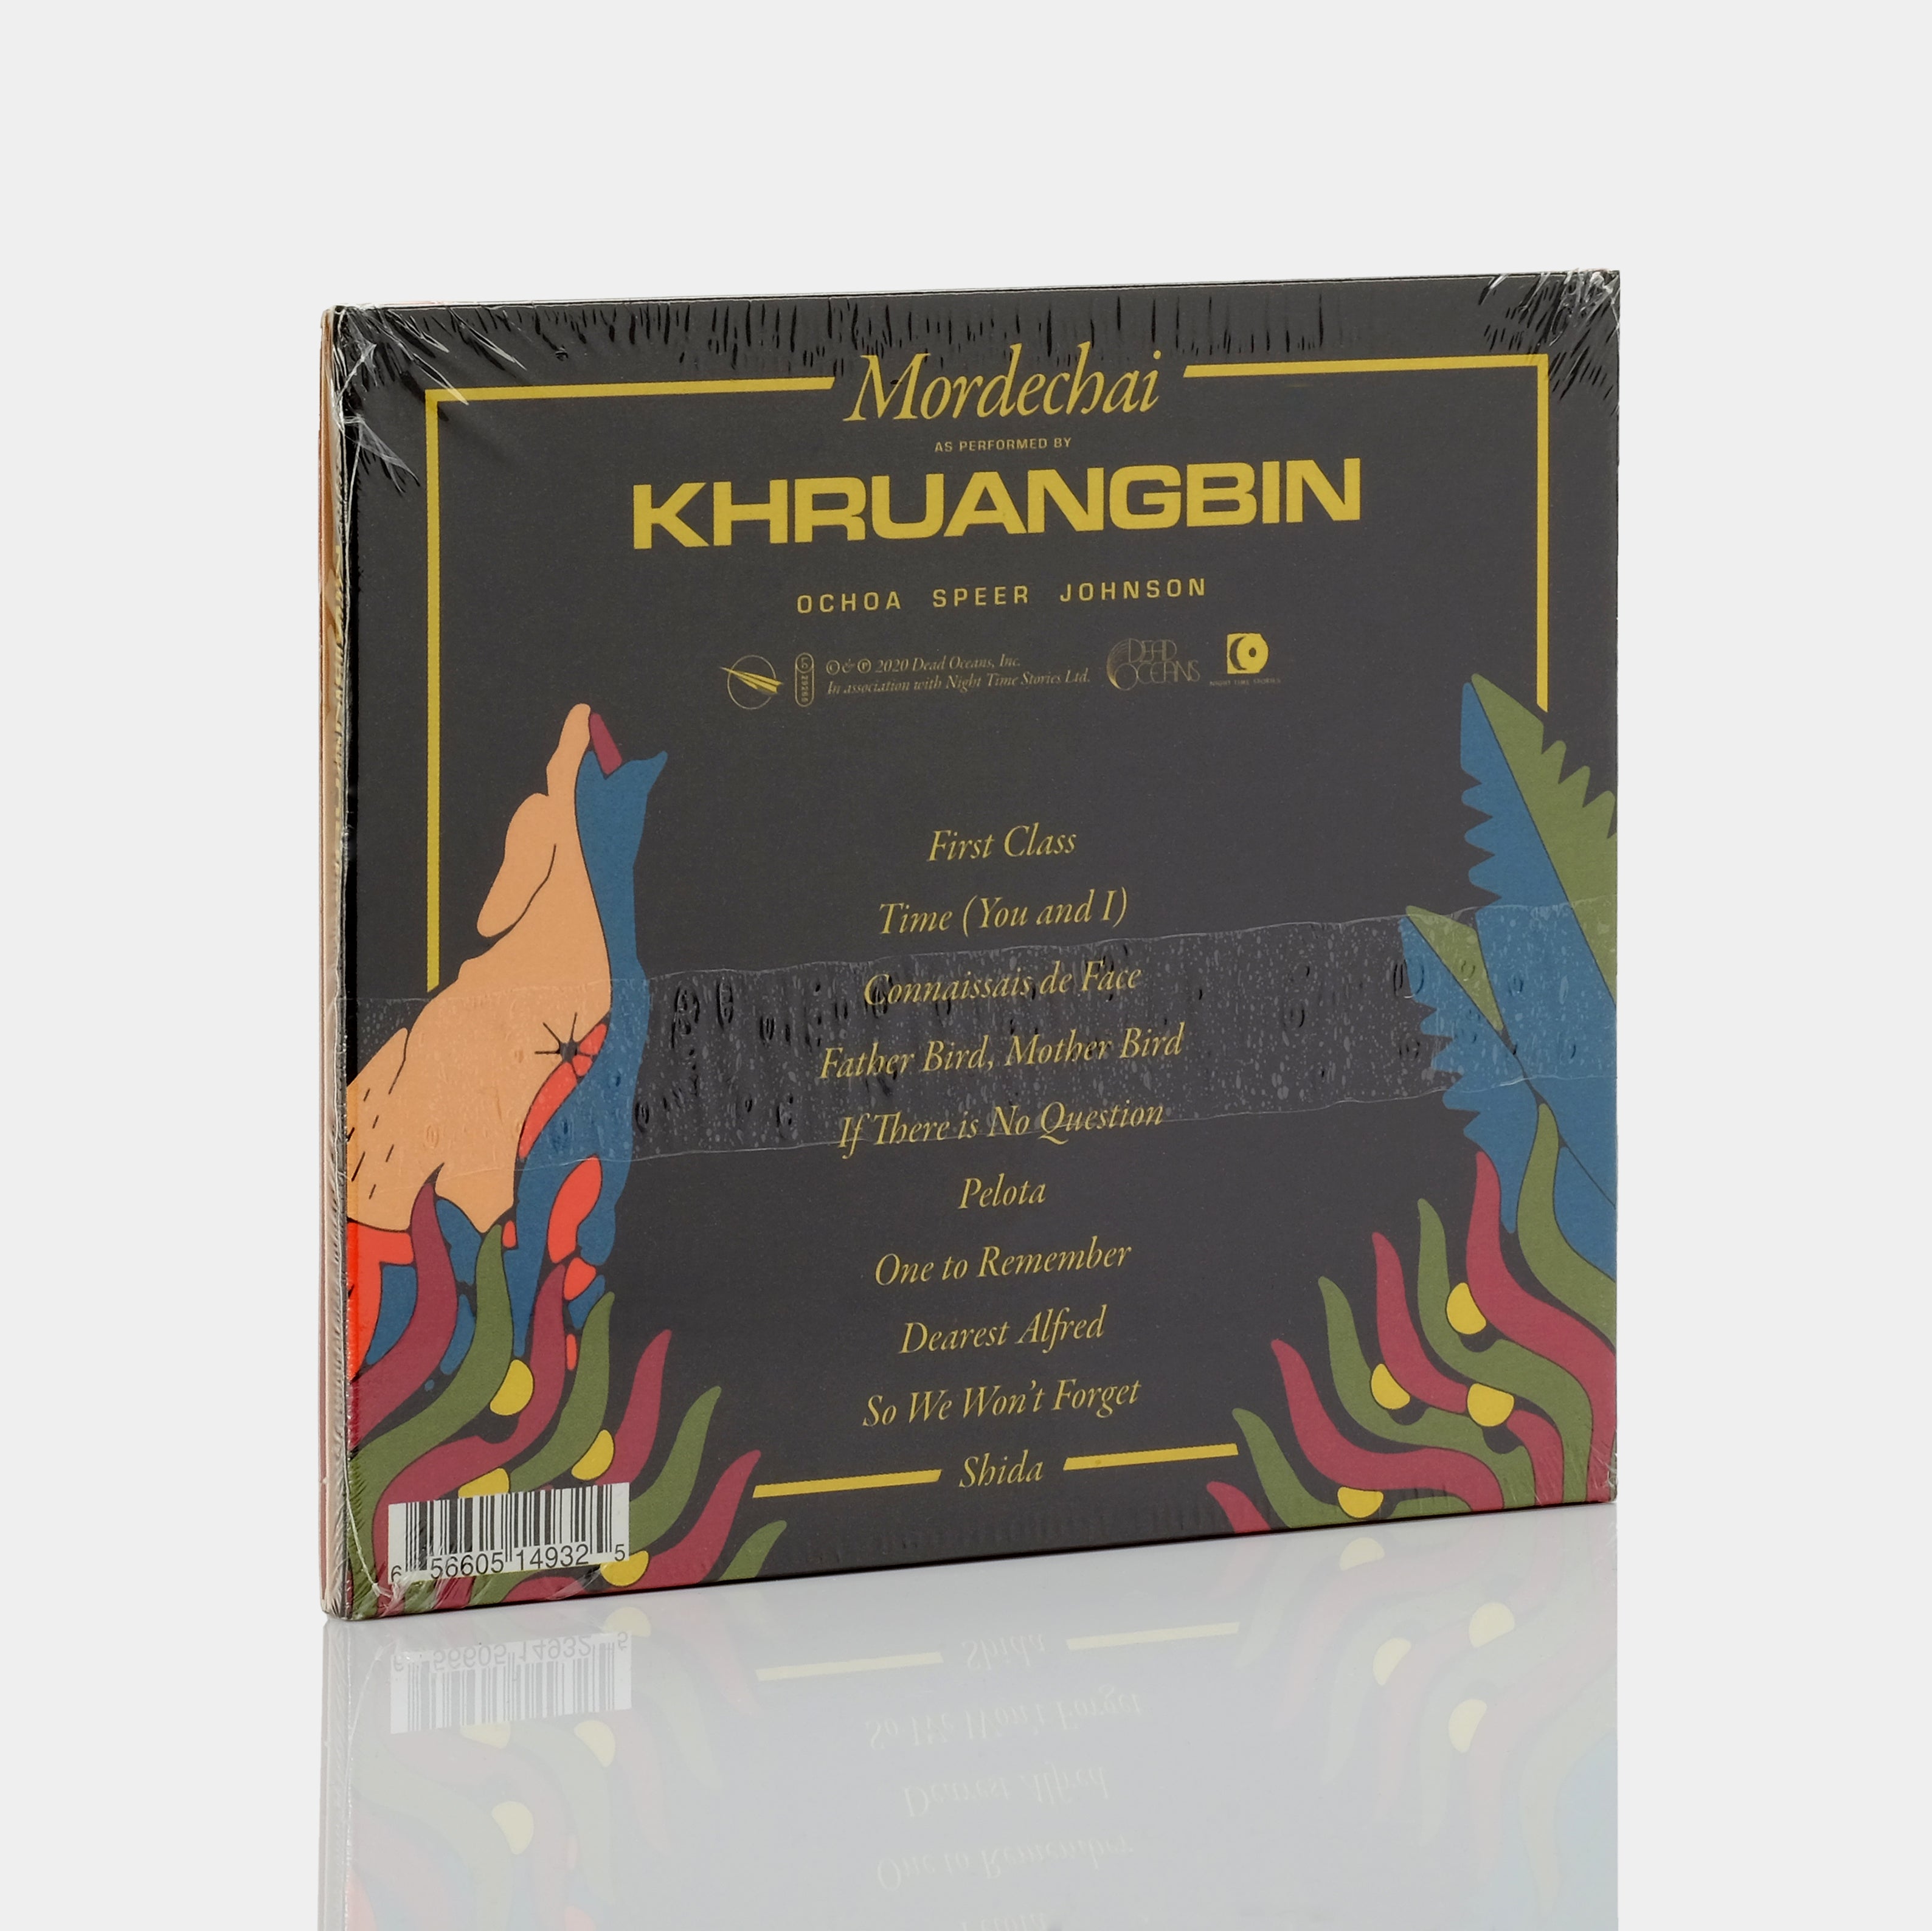 Khruangbin - Mordechai CD